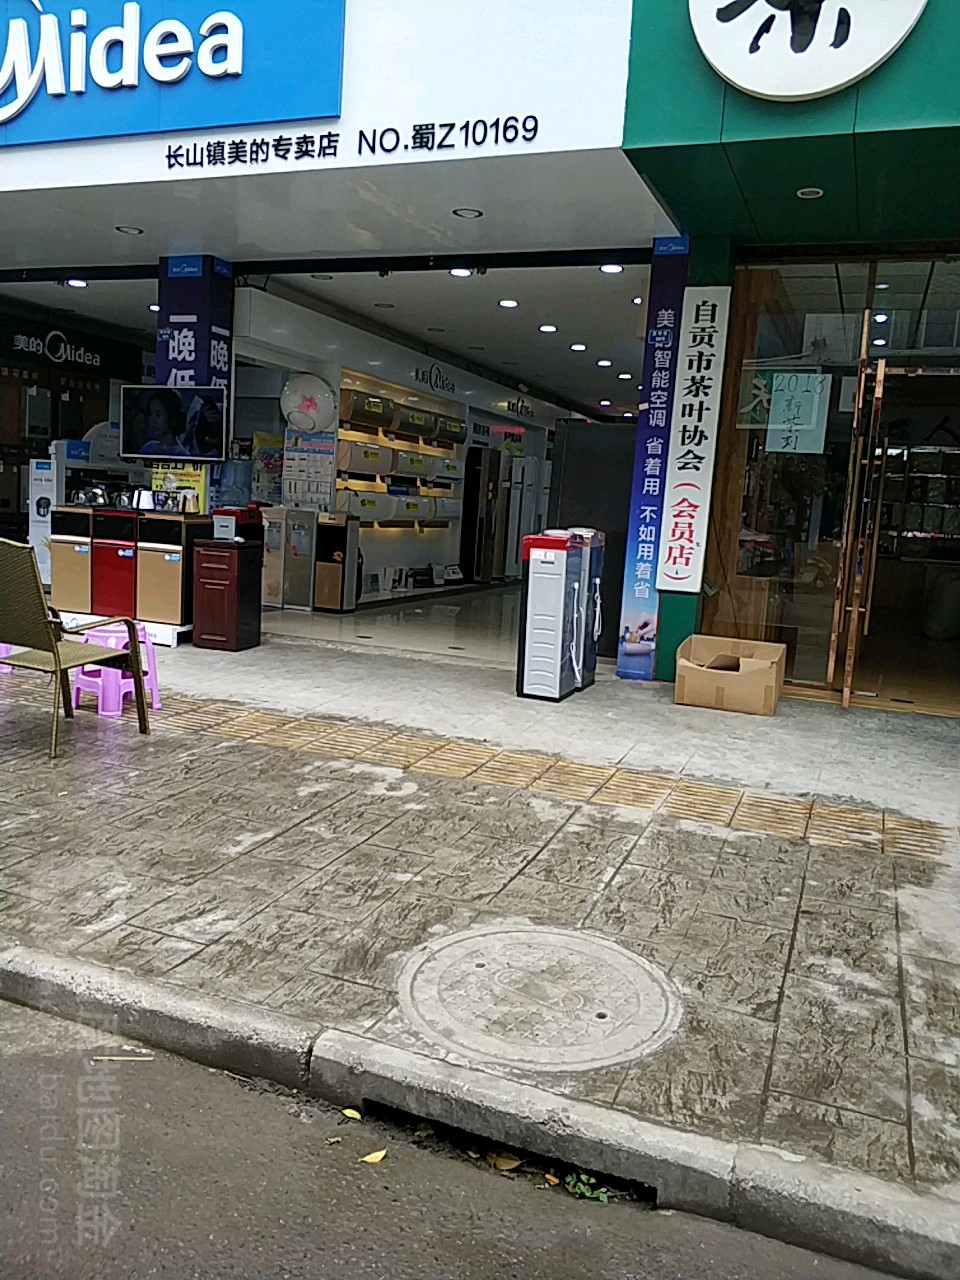 自贡市茶叶协会会员店